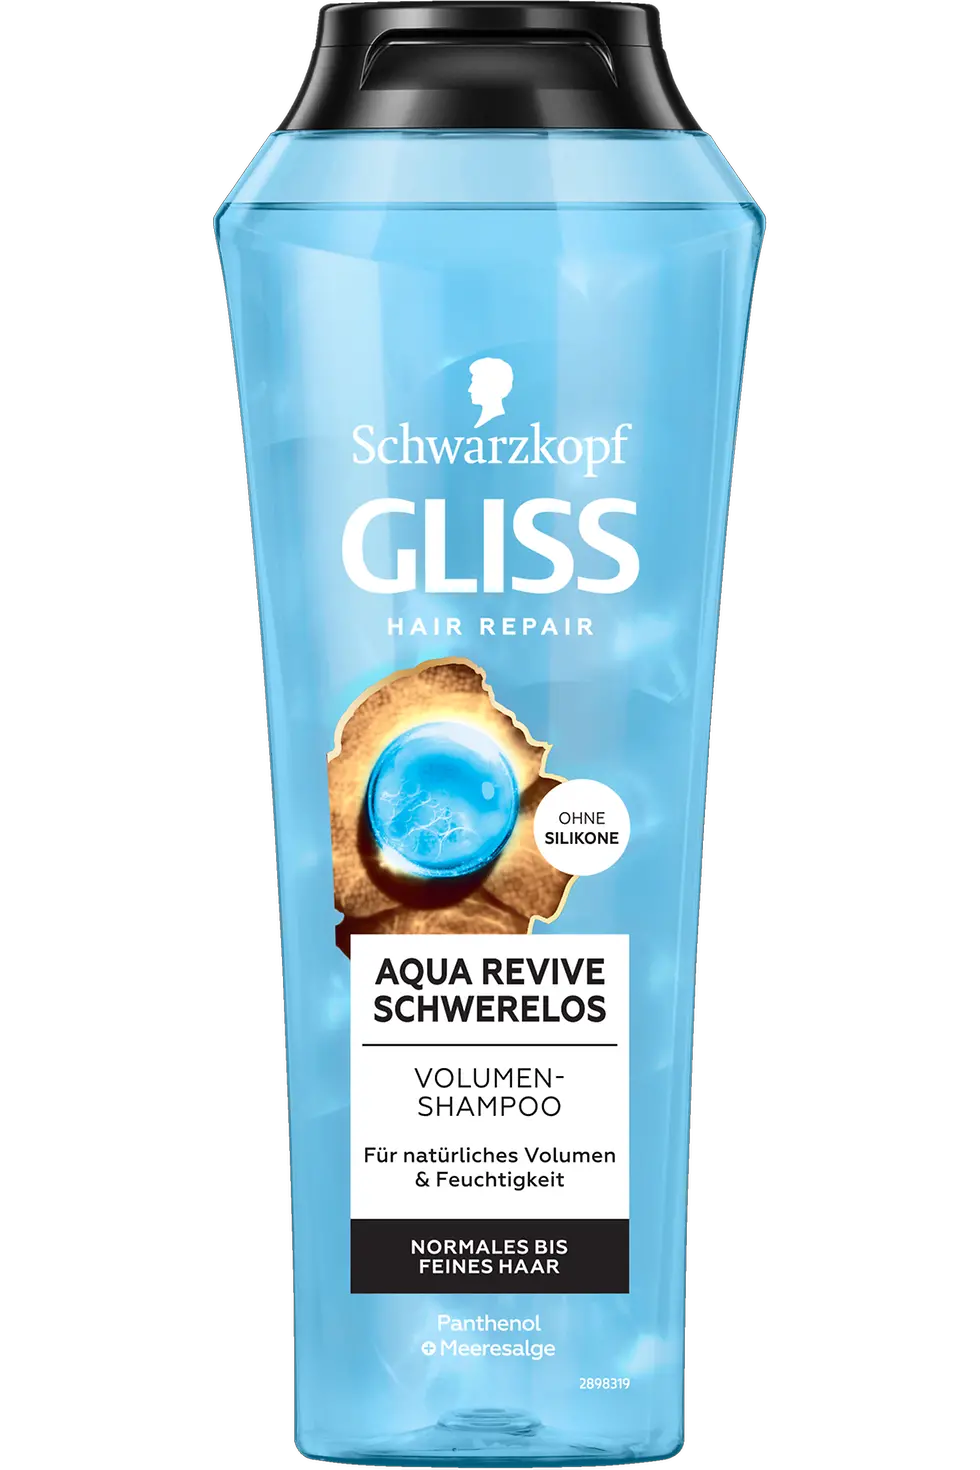 
Gliss Aqua Revive Schwerelos Volumen-Shampoo